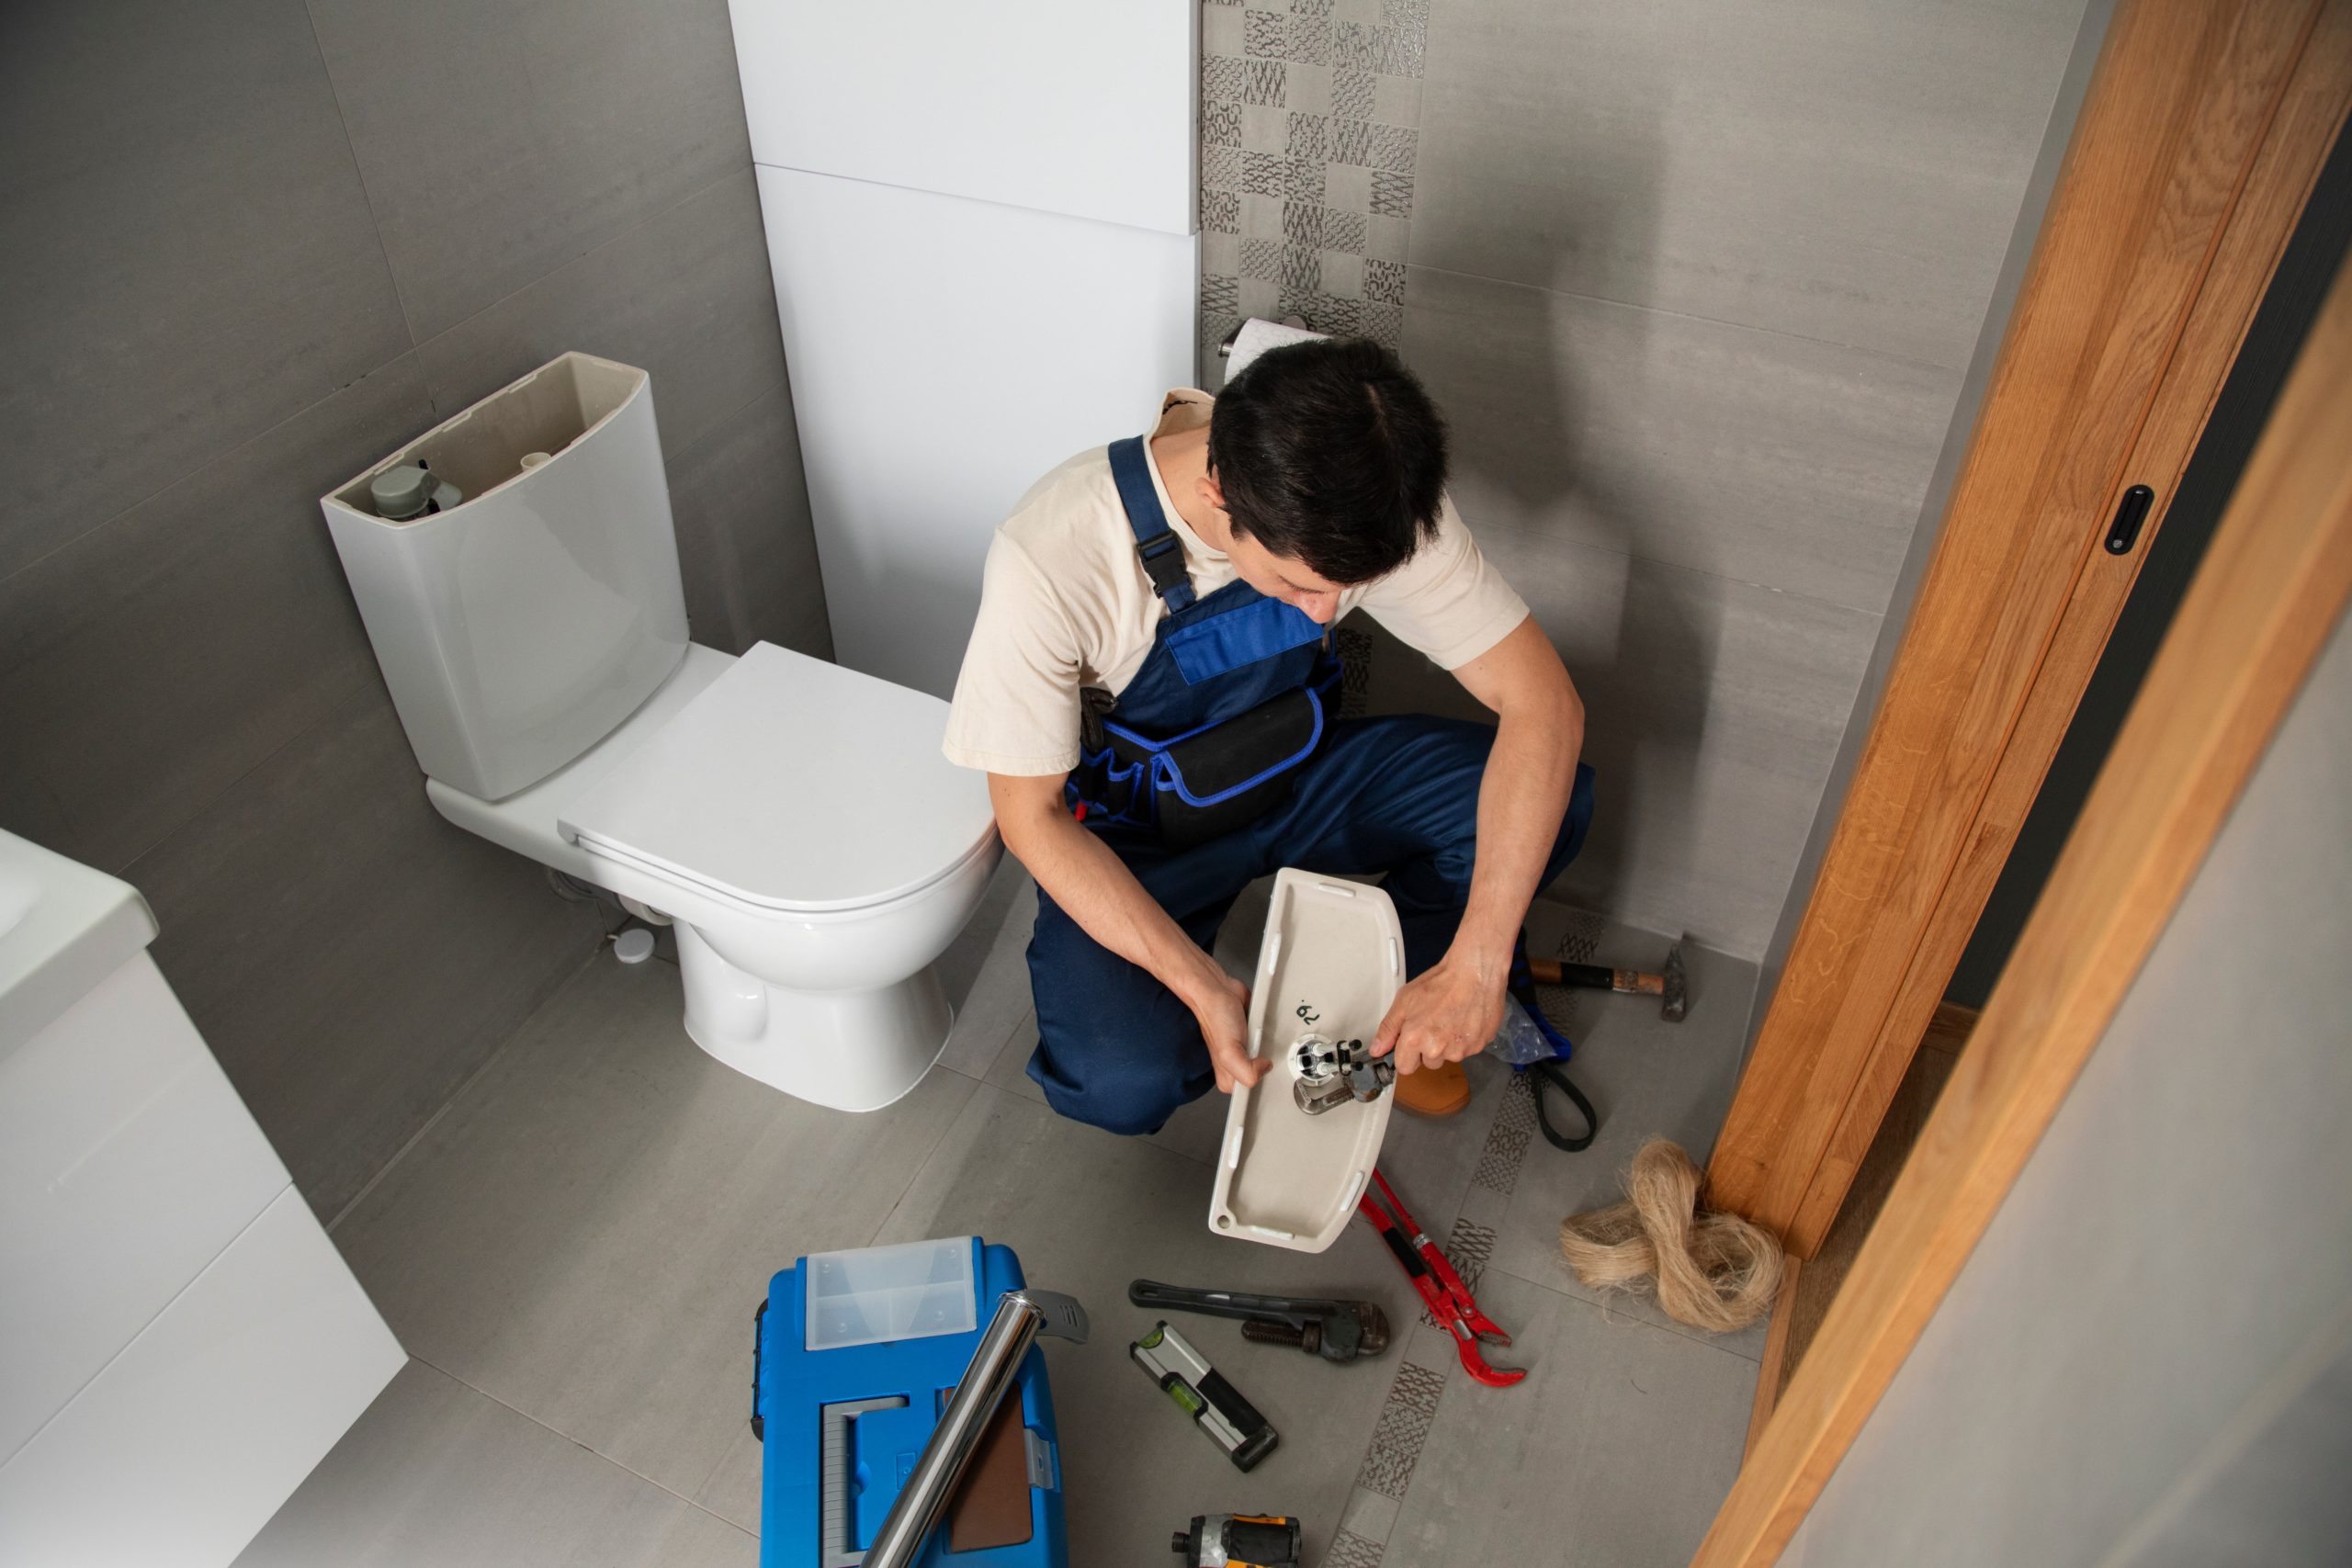 Problemas de sucção do vaso sanitário: encanador de joelhos com a tampa do vaso mão utilizando ferramentas, ele está de jardineira jeans e o banheiro possui azulejo cinza e o vaso é branco